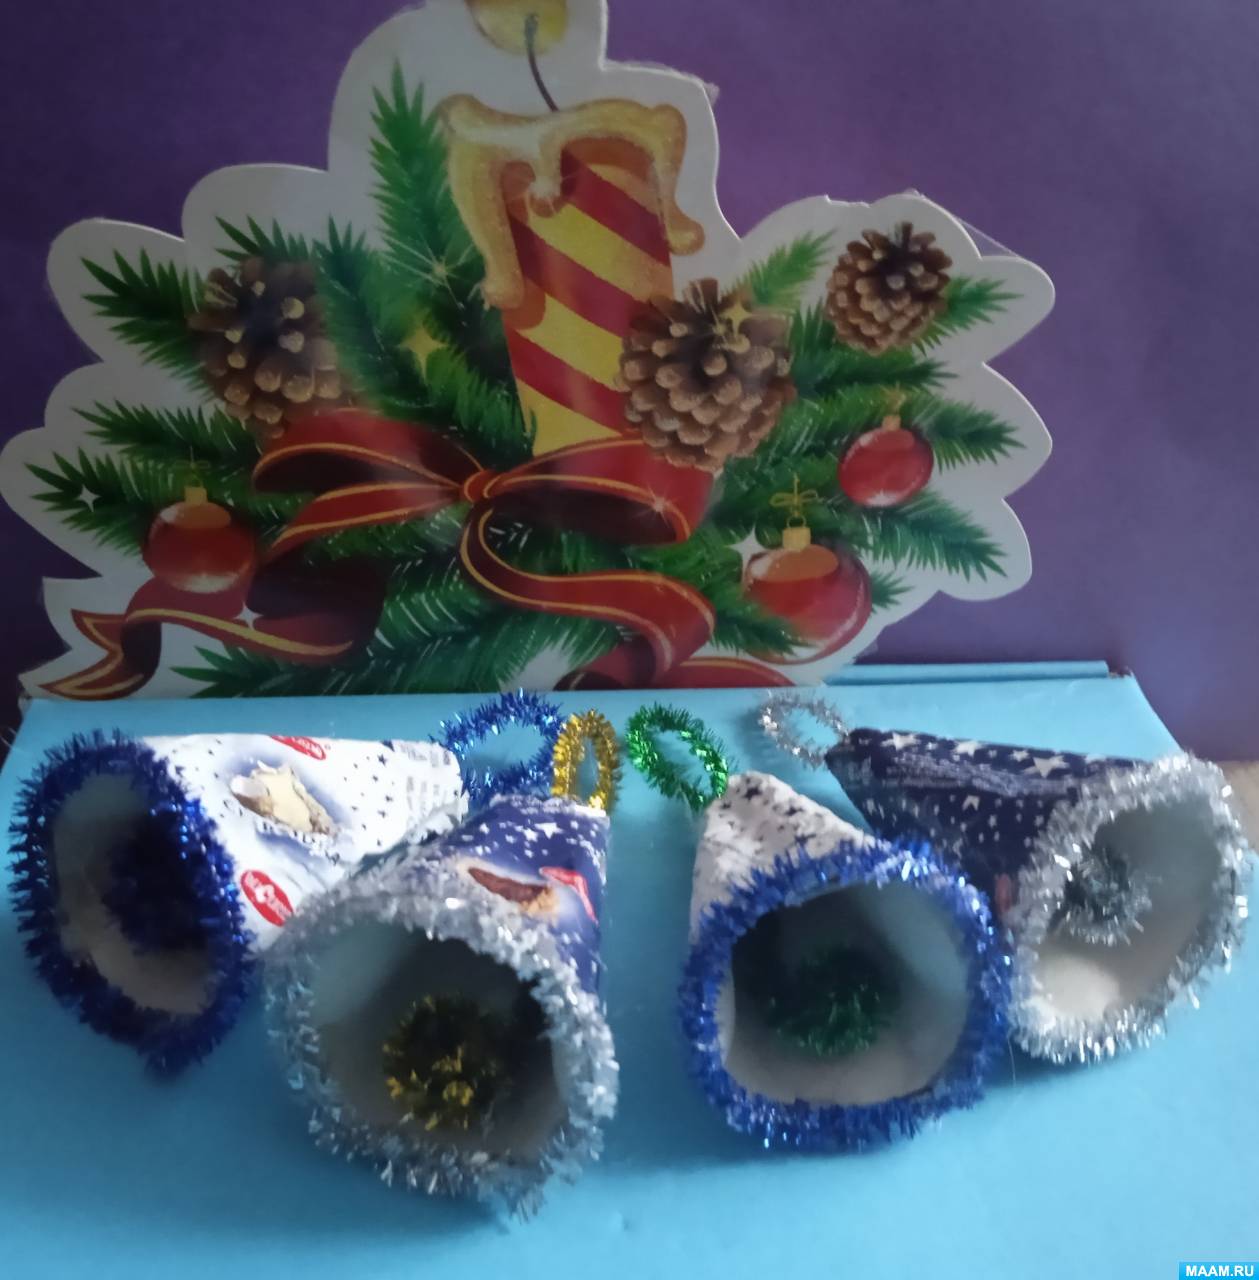 Мастер-класс по изготовлению поделки из яичного лотка, синельной проволоки и фантика от конфет «Новогодний колокольчик»